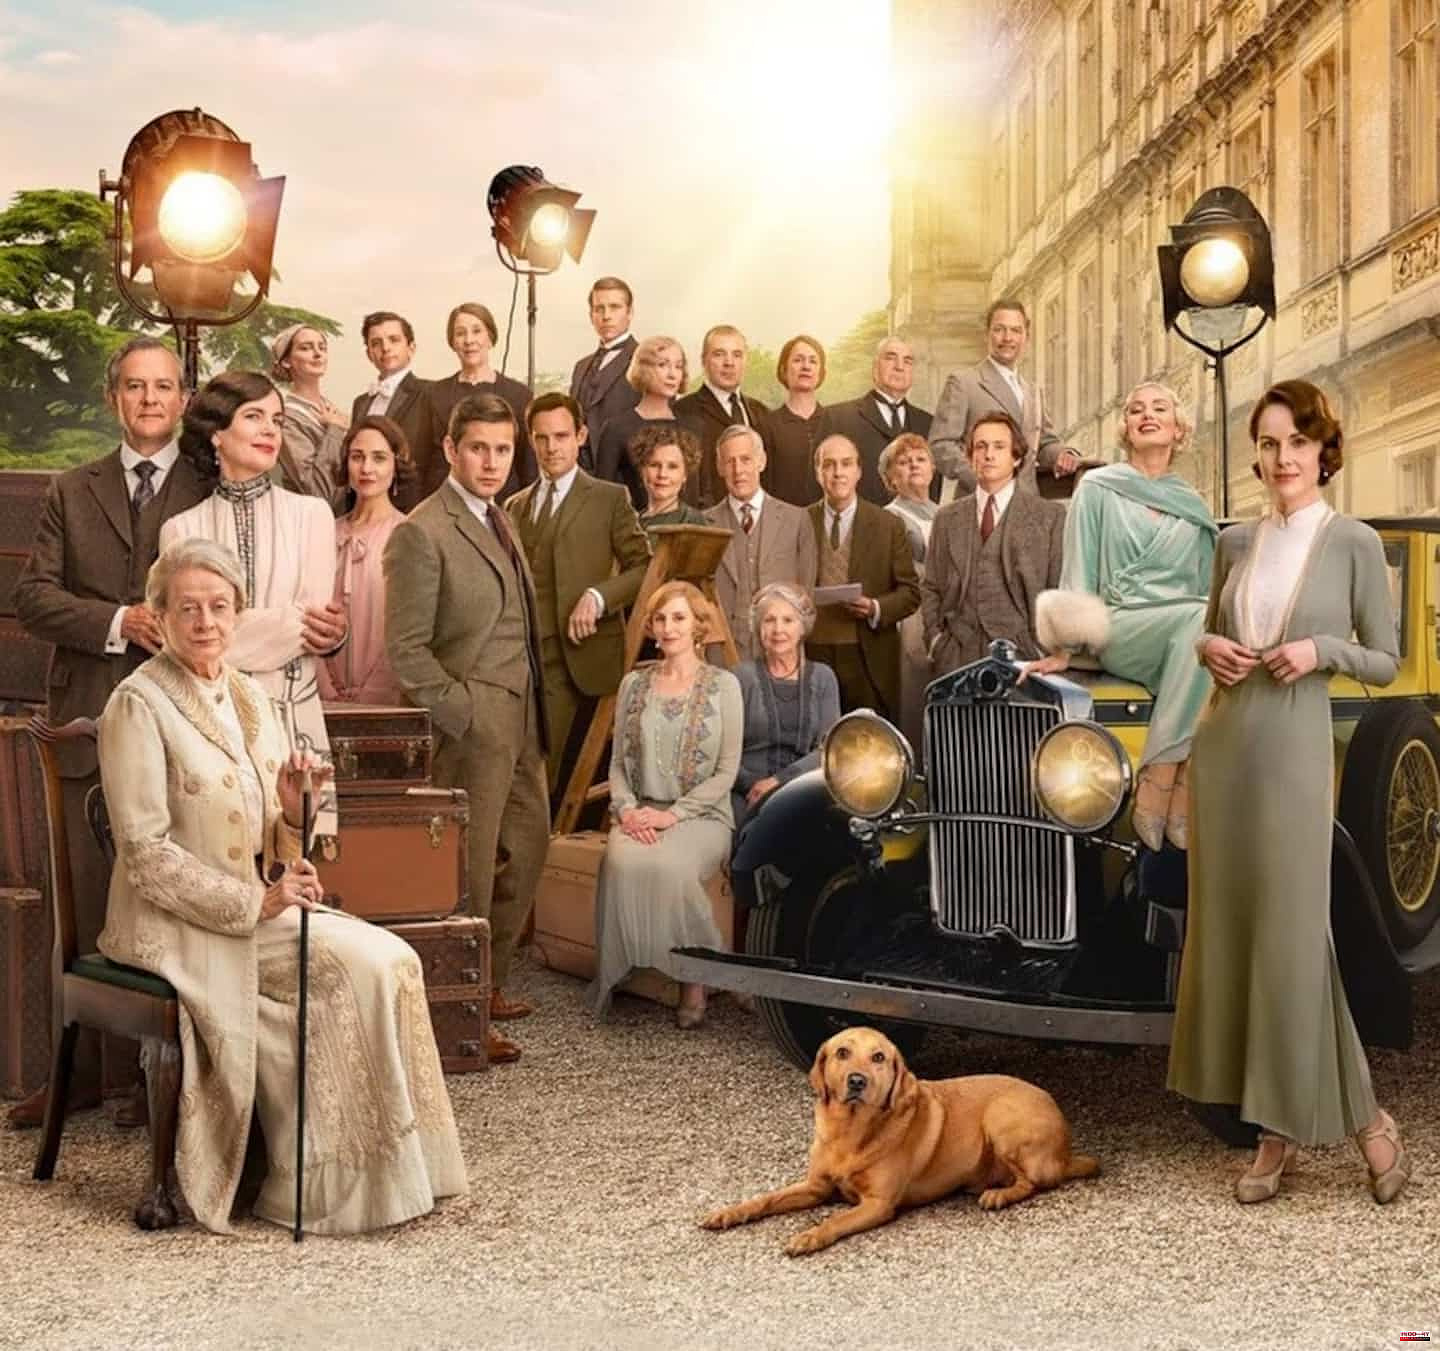 “Downton Abbey: a new era”: on familiar (nostalgic) ground